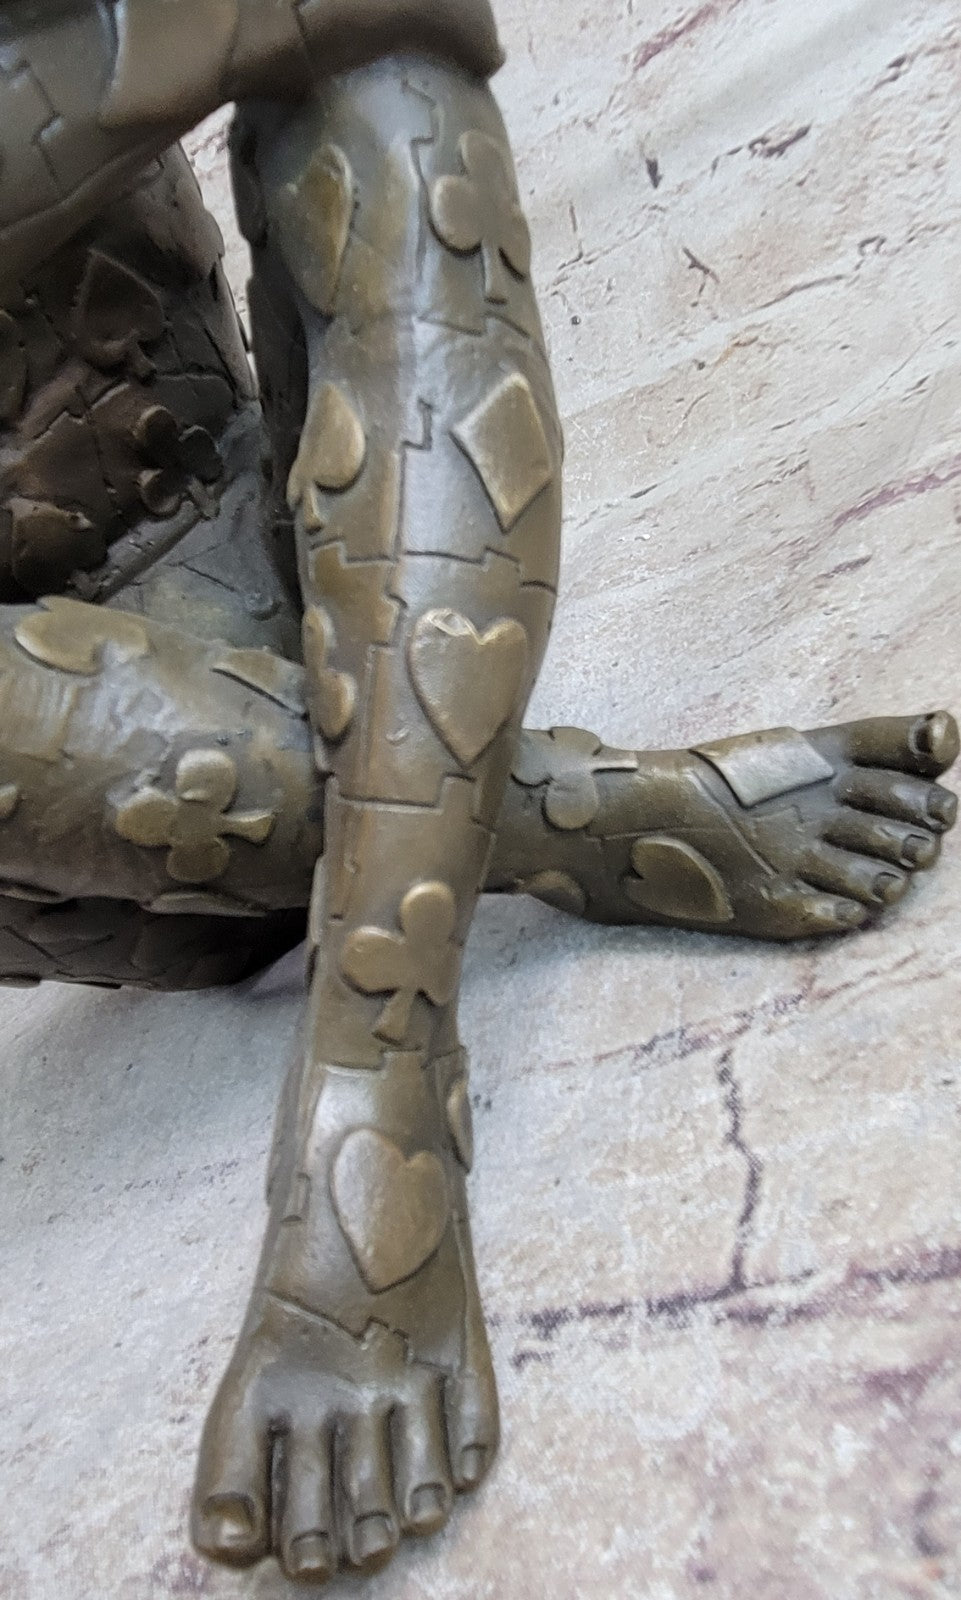 Salvador Dali Nude Sitting Male Bronze Sculpture Figurine Figure Decor